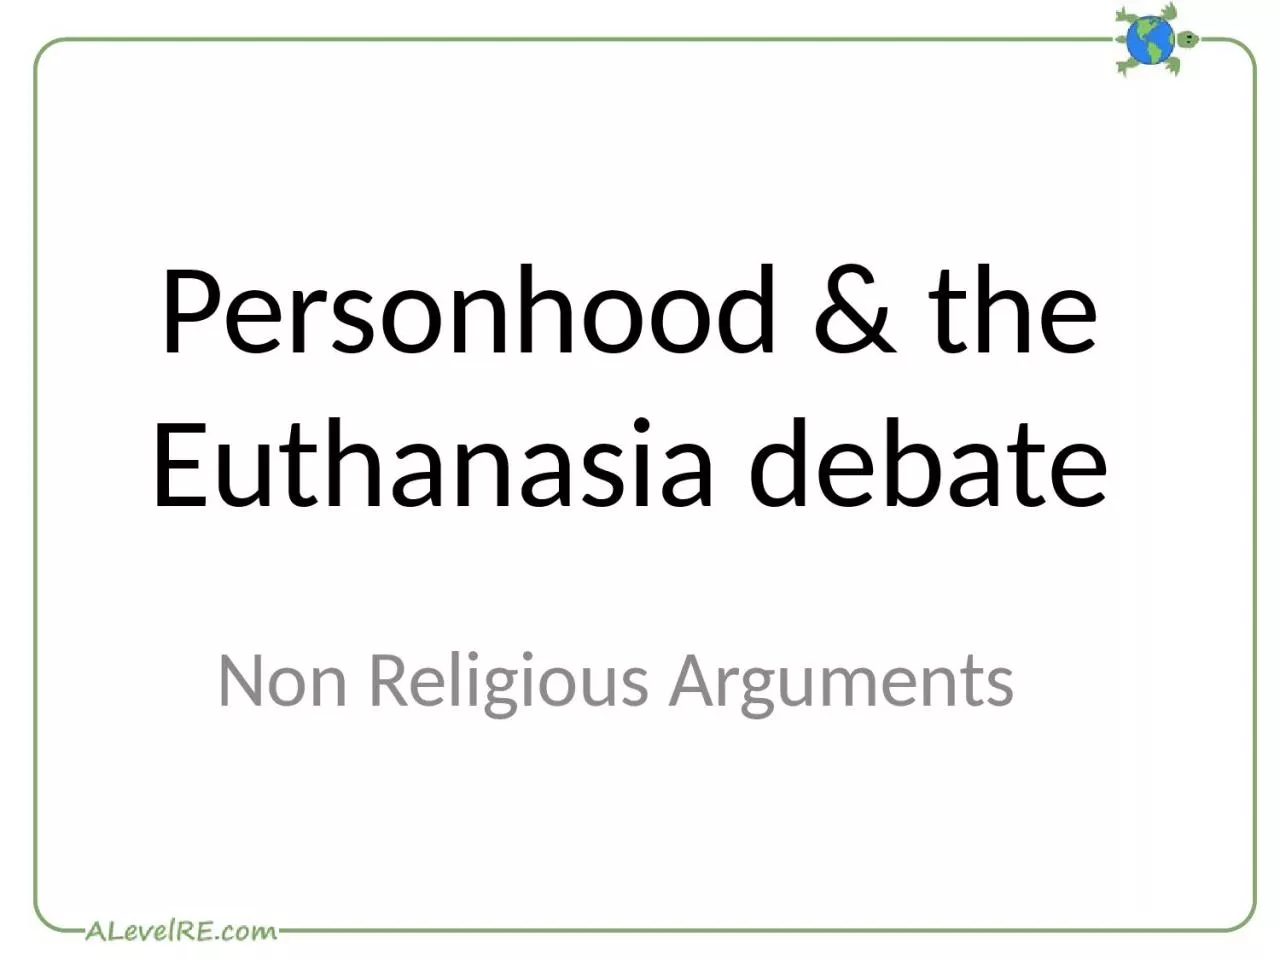 Personhood & the Euthanasia debate